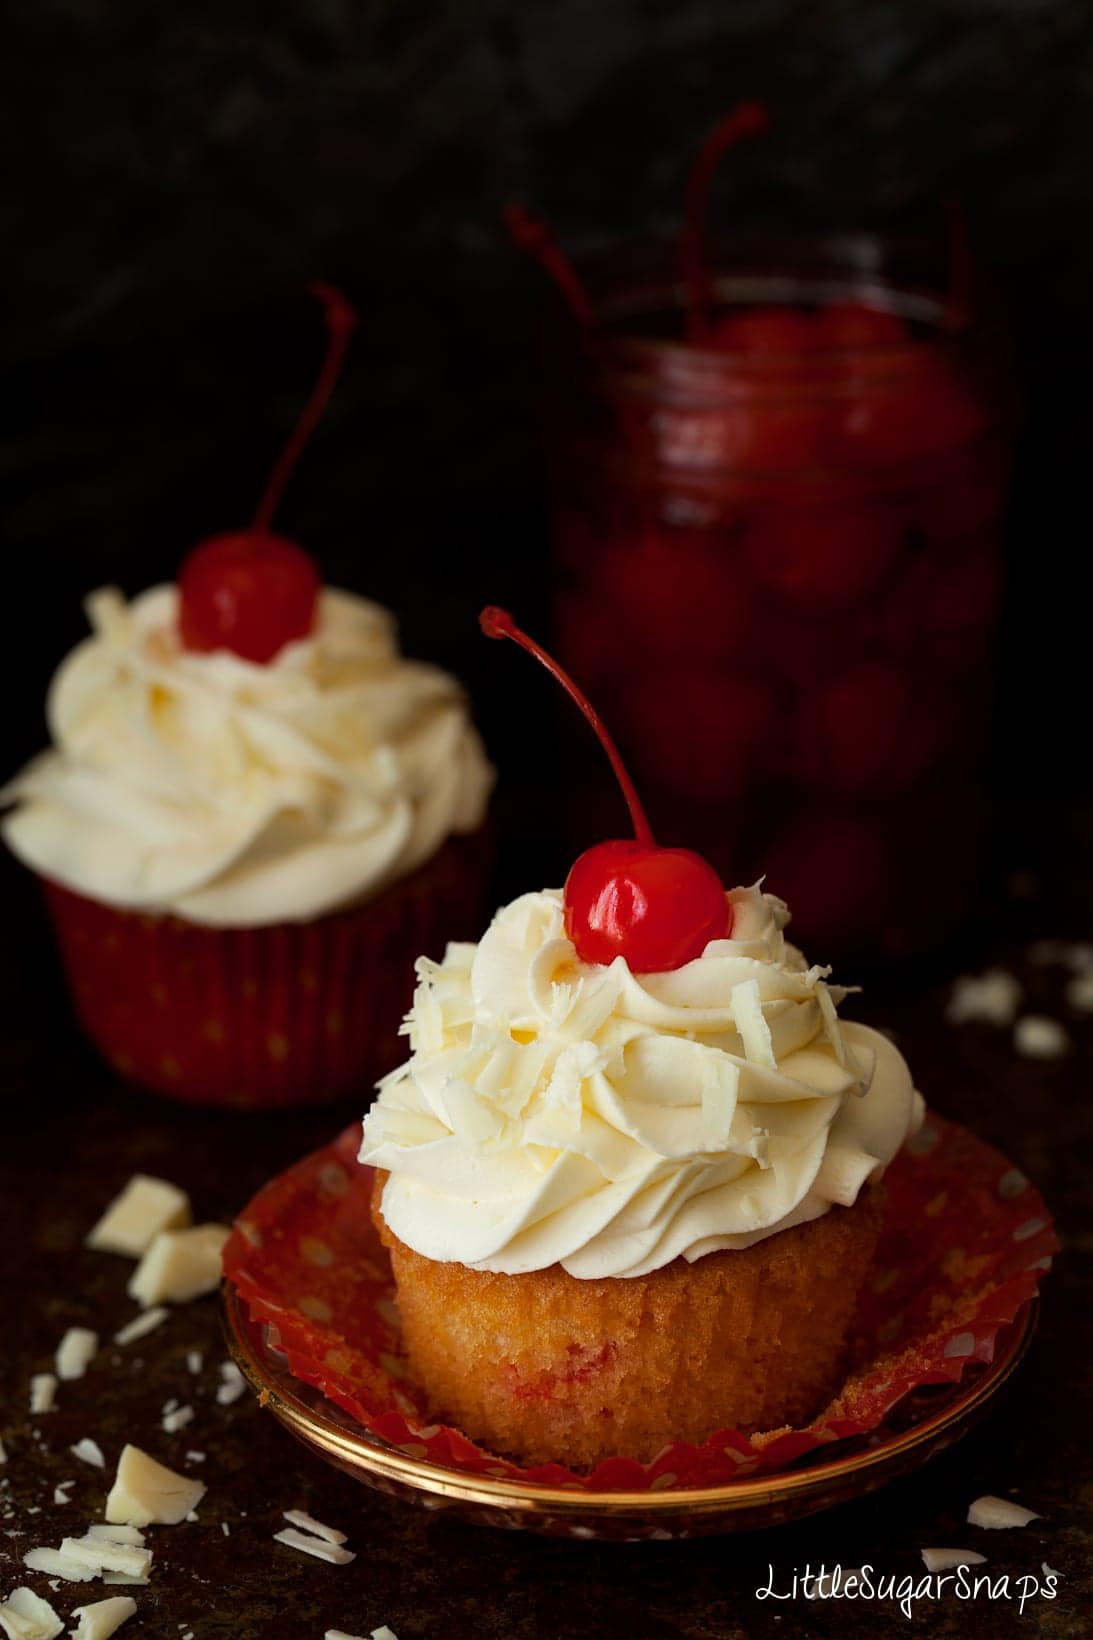 Maraschino Cherry Cupcakes with White Chocolate Buttercream.